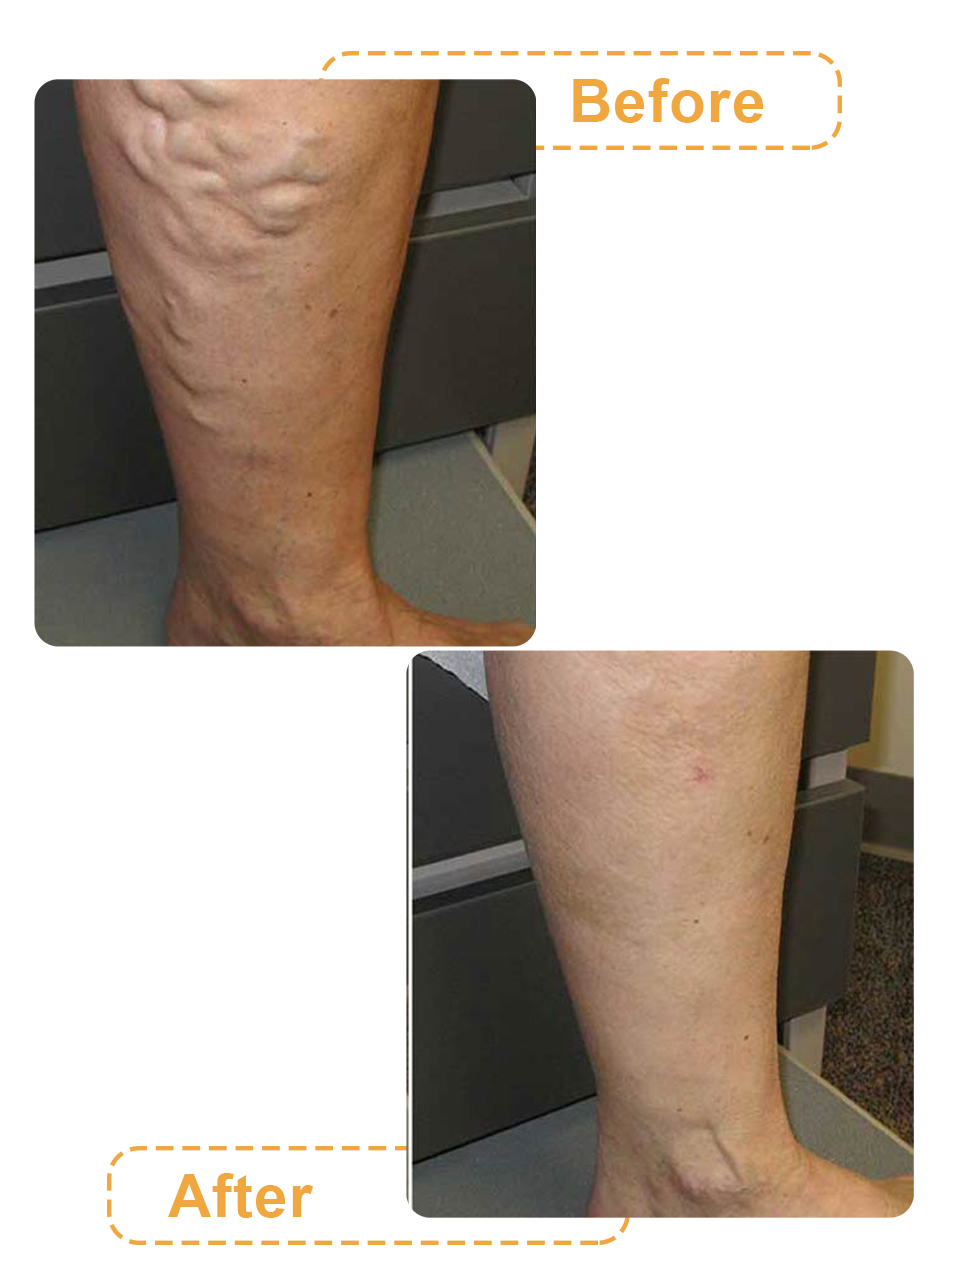 عکس های قبل و بعد لیپوماتیک ساق پا